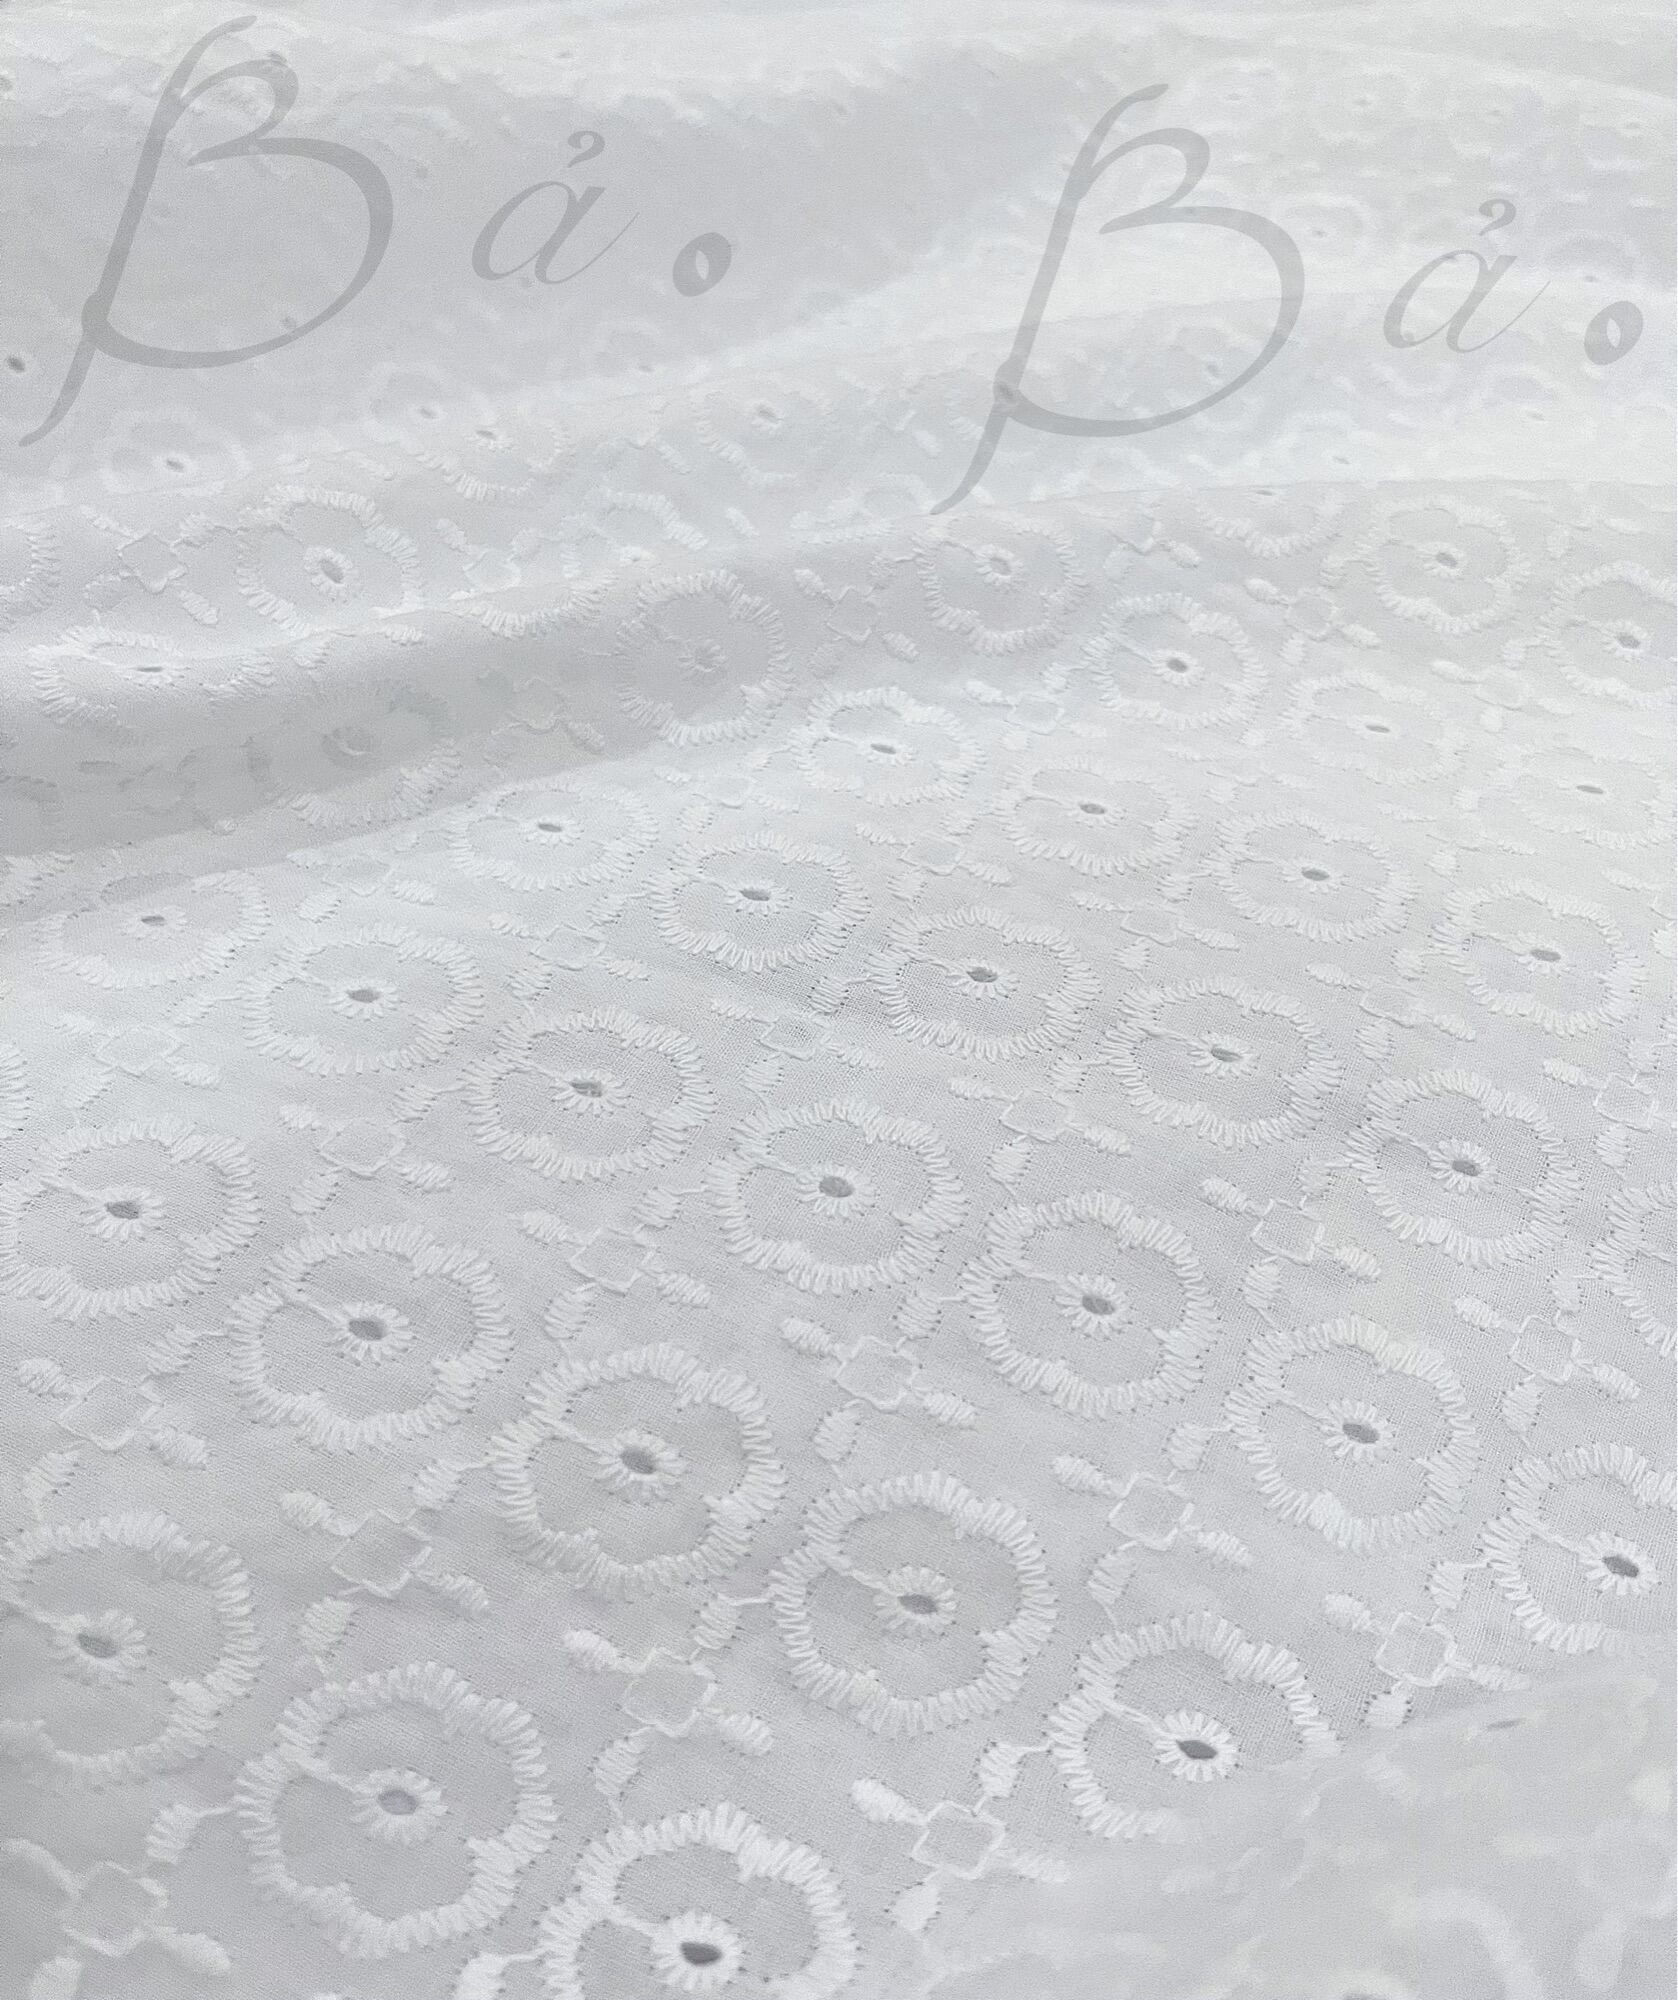 Vải Boi Cotton được ưa chuộng bởi độ bền, độ bóng và tính linh hoạt trong việc sáng tạo. Hãy cùng khám phá những mẫu vải Boi Cotton đẹp và đa dạng để biến những ý tưởng sáng tạo thành hiện thực!